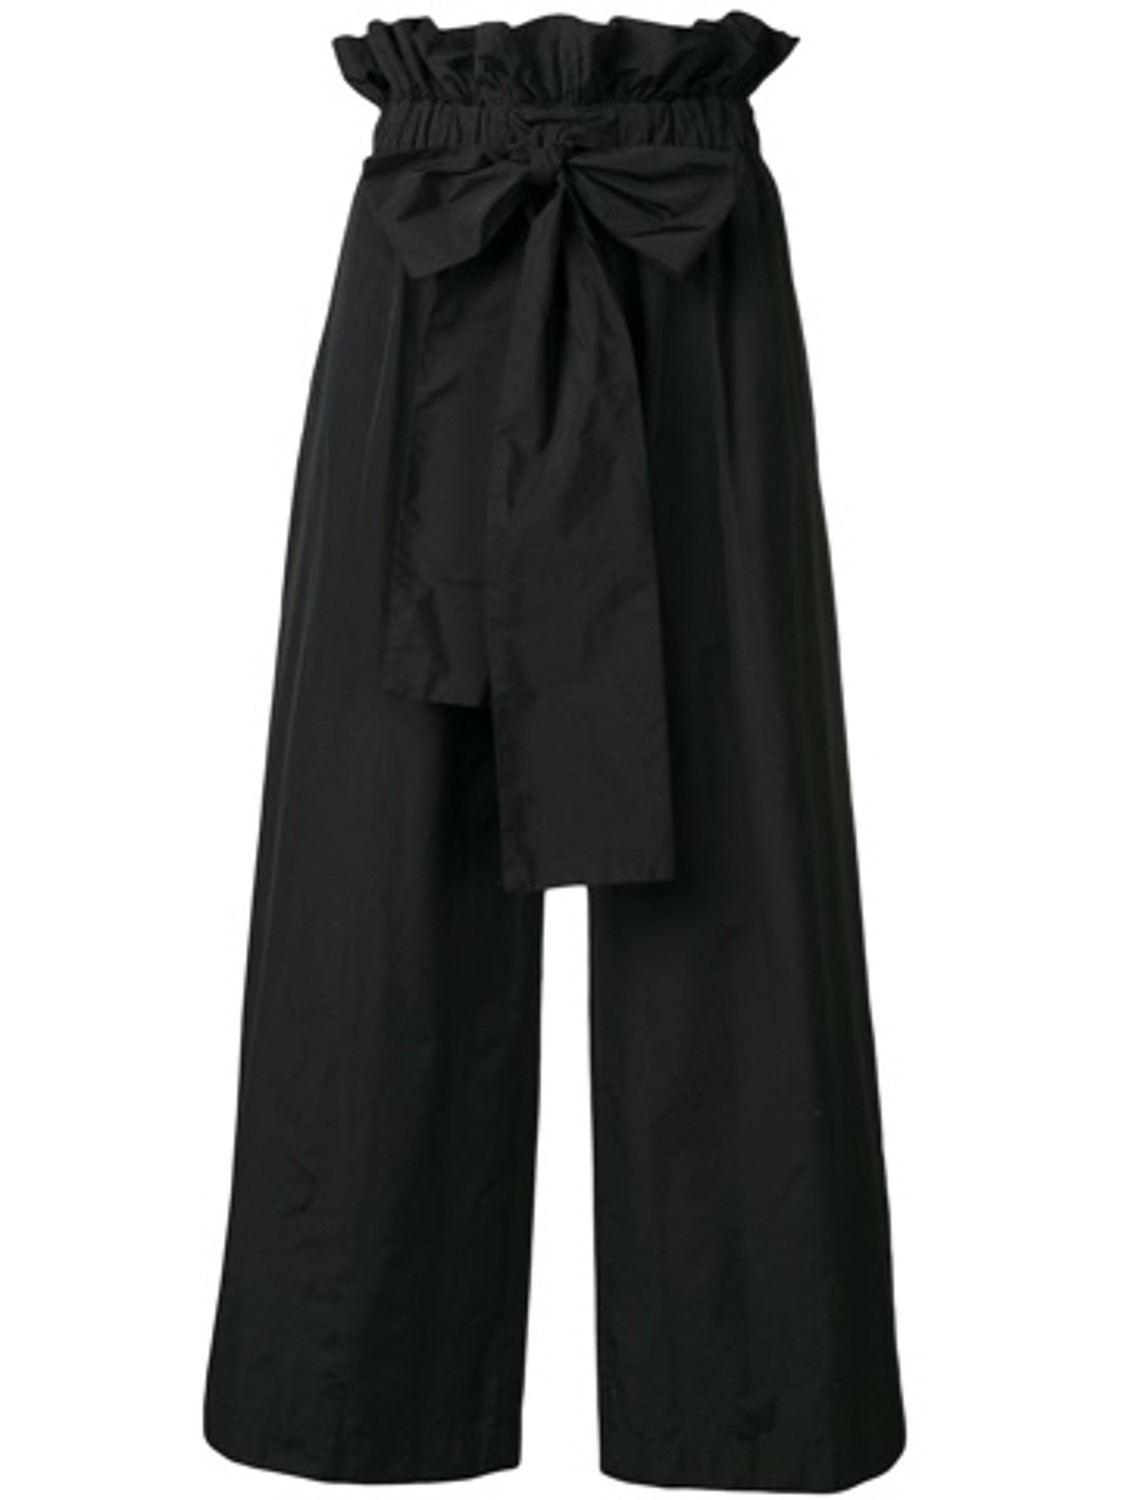 shop MSGM  Pantaloni: Pantalone MSGM, modello vita alta, elastico in vita, fiocco a chiusura sul davanti, svasato.

Composizione: 60% poliestere, 40% cotone. number 1432